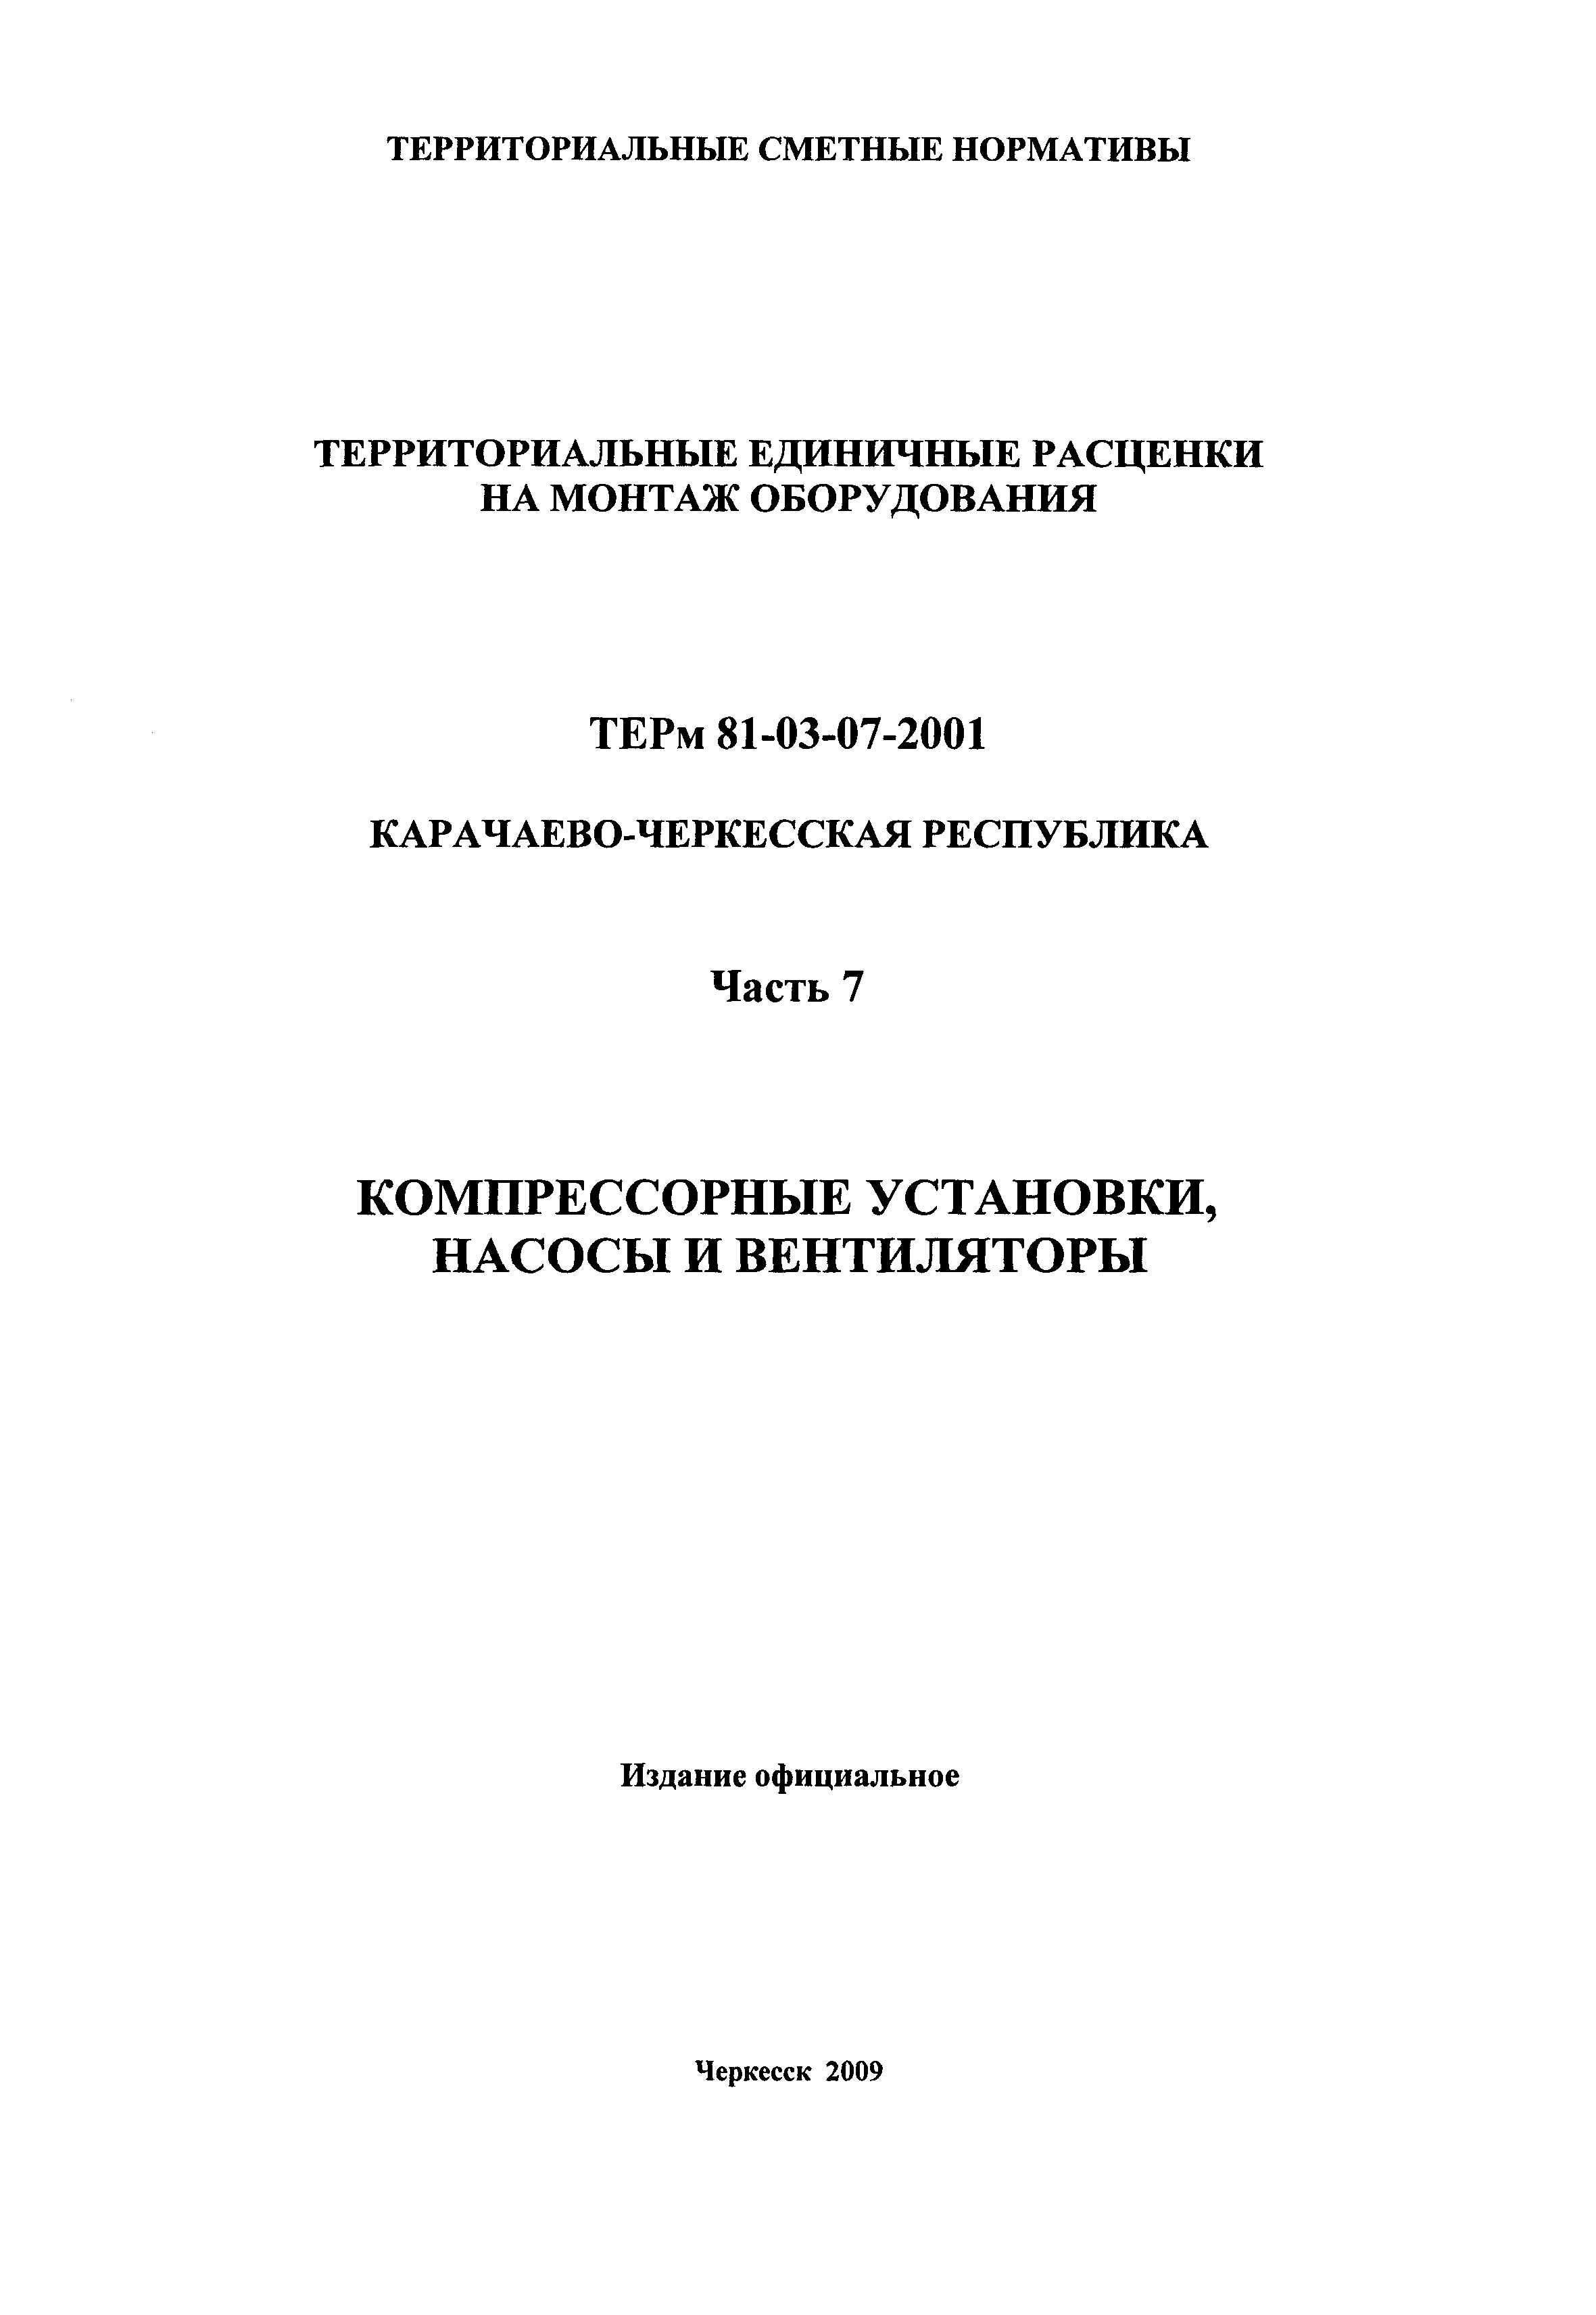 ТЕРм Карачаево-Черкесская Республика 07-2001